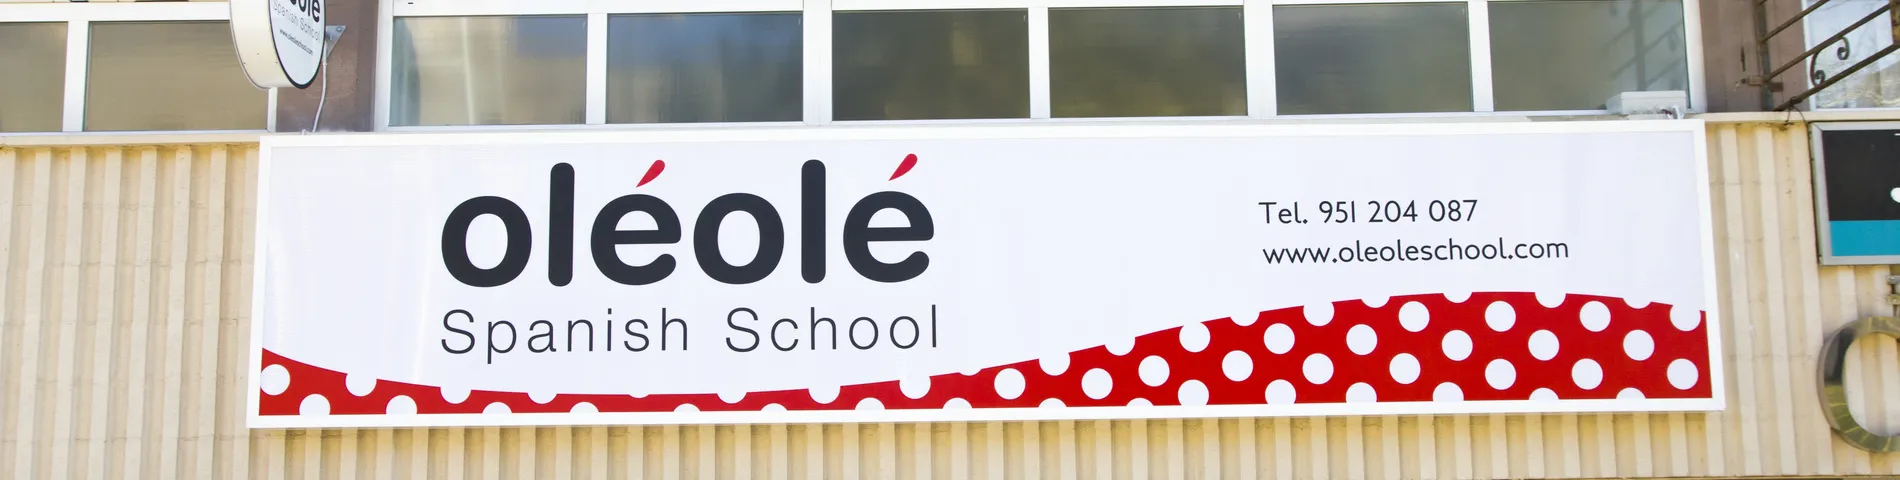 OléOlé Spanish School зображення 1